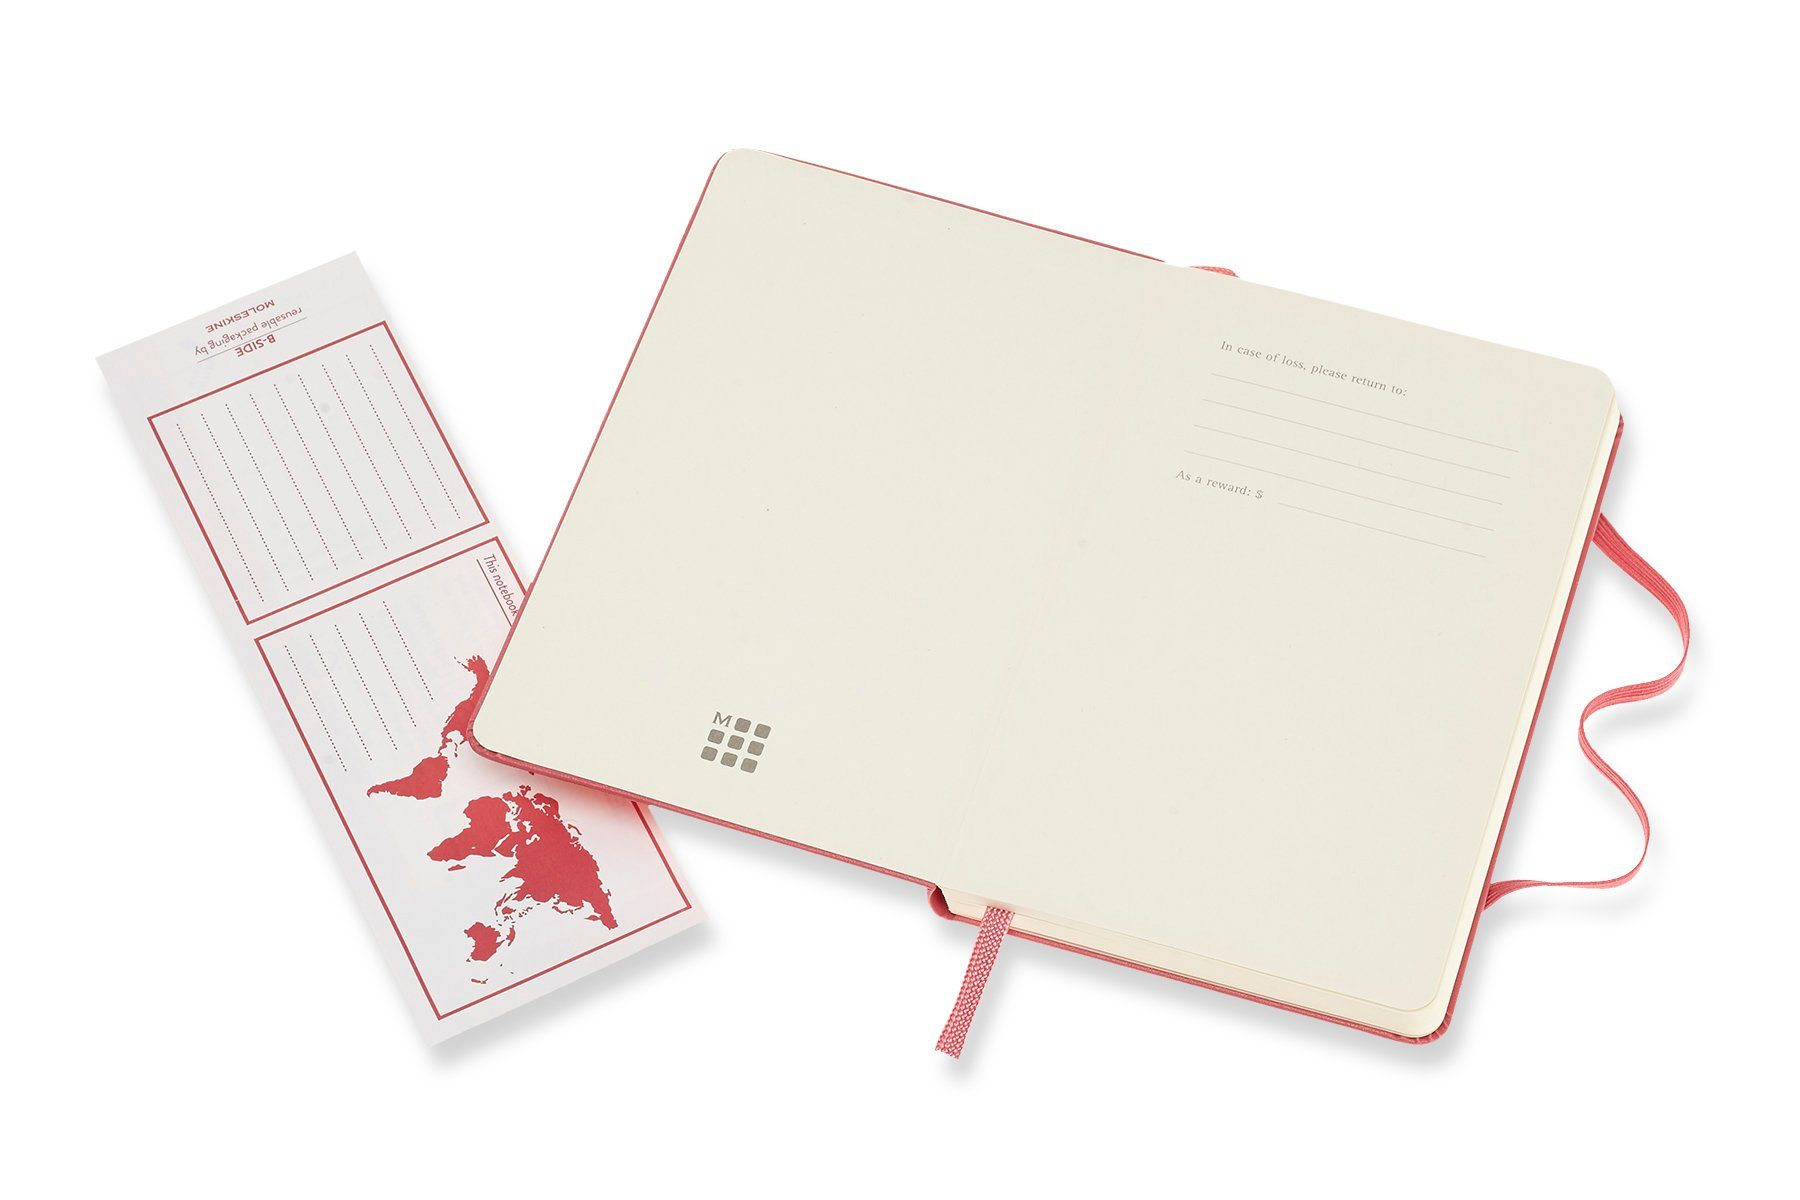 Notizbuch, MOLESKINE Classic Notizbuch Pocket Daisy Fester Pink Einband Blanko